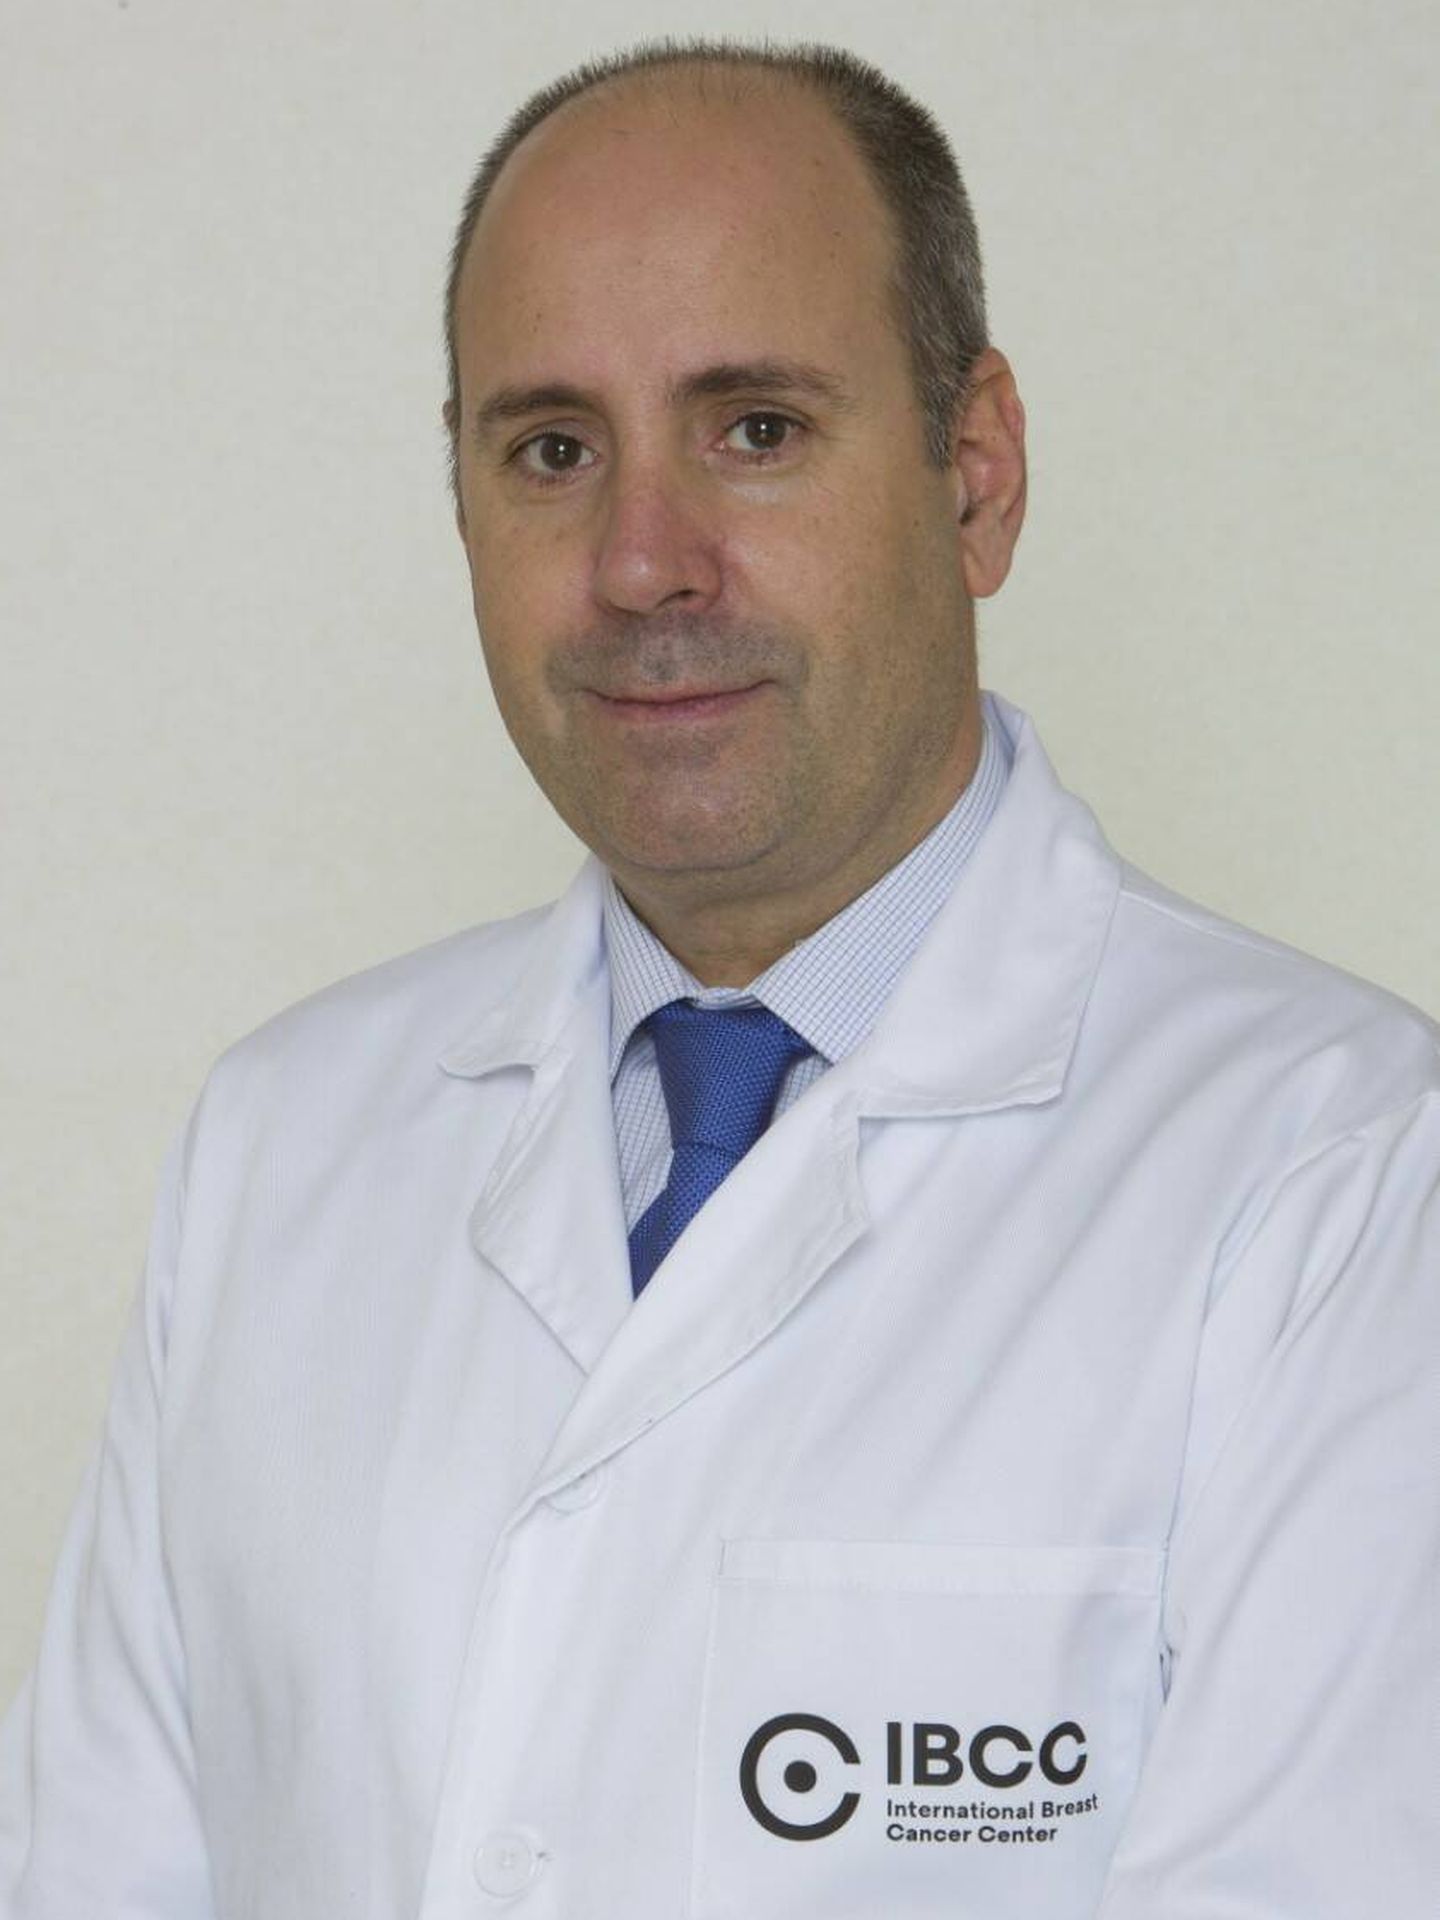 El oncólogo Javier Cortés es el primer autor del artículo que publica 'New England'. (IBCC)